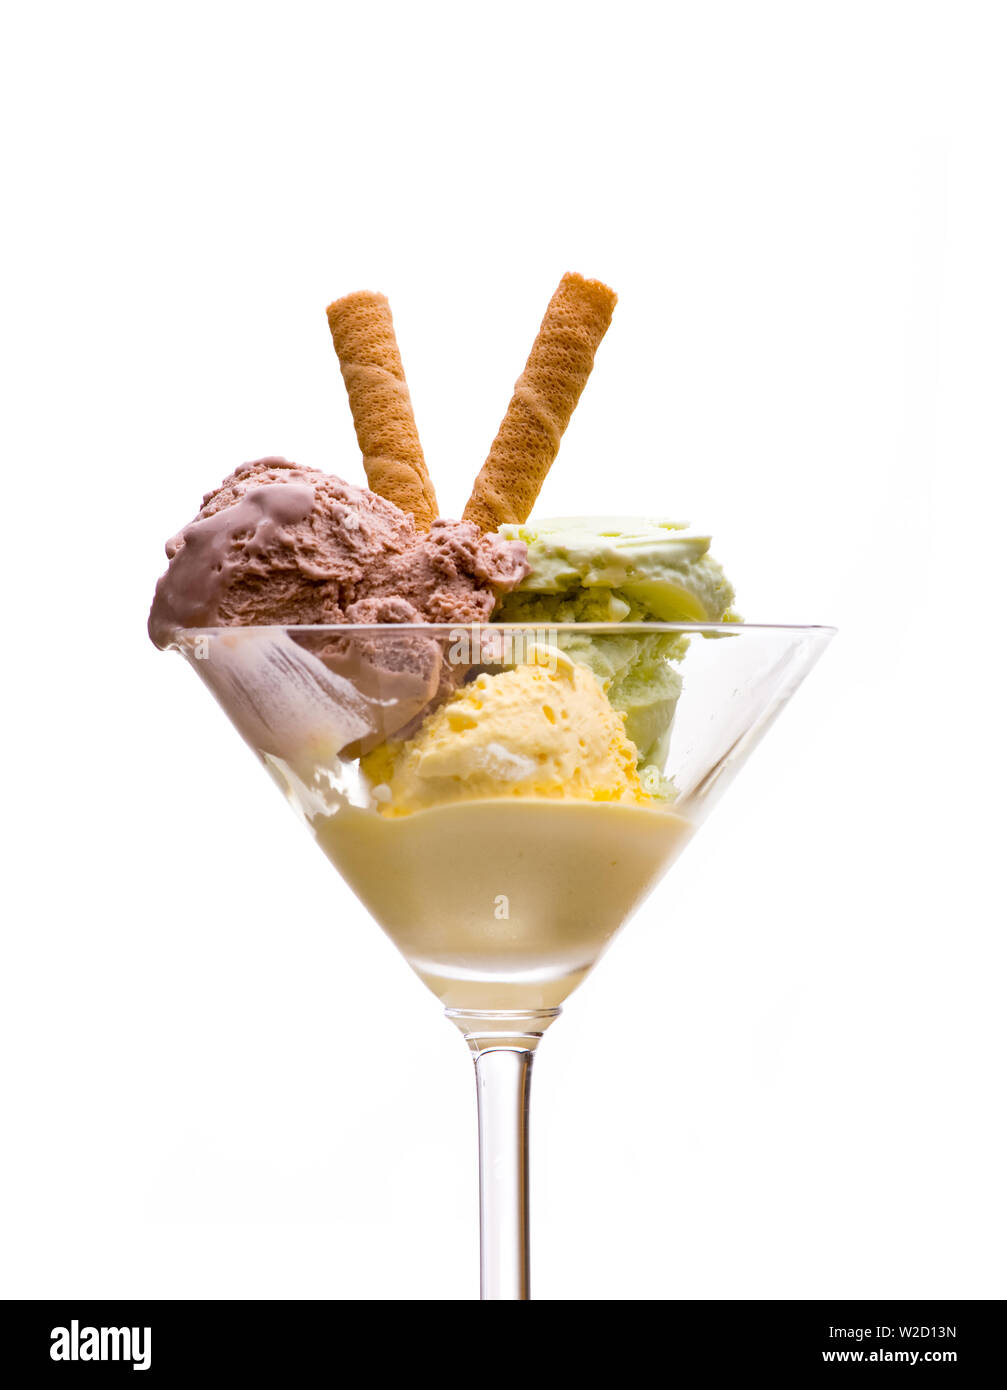 Gelato gelato: vista anteriore del gelato Gelato con giallo, verde e marrone e crema di ghiaccio con waffle in una coppetta Martini su sfondo bianco Foto Stock